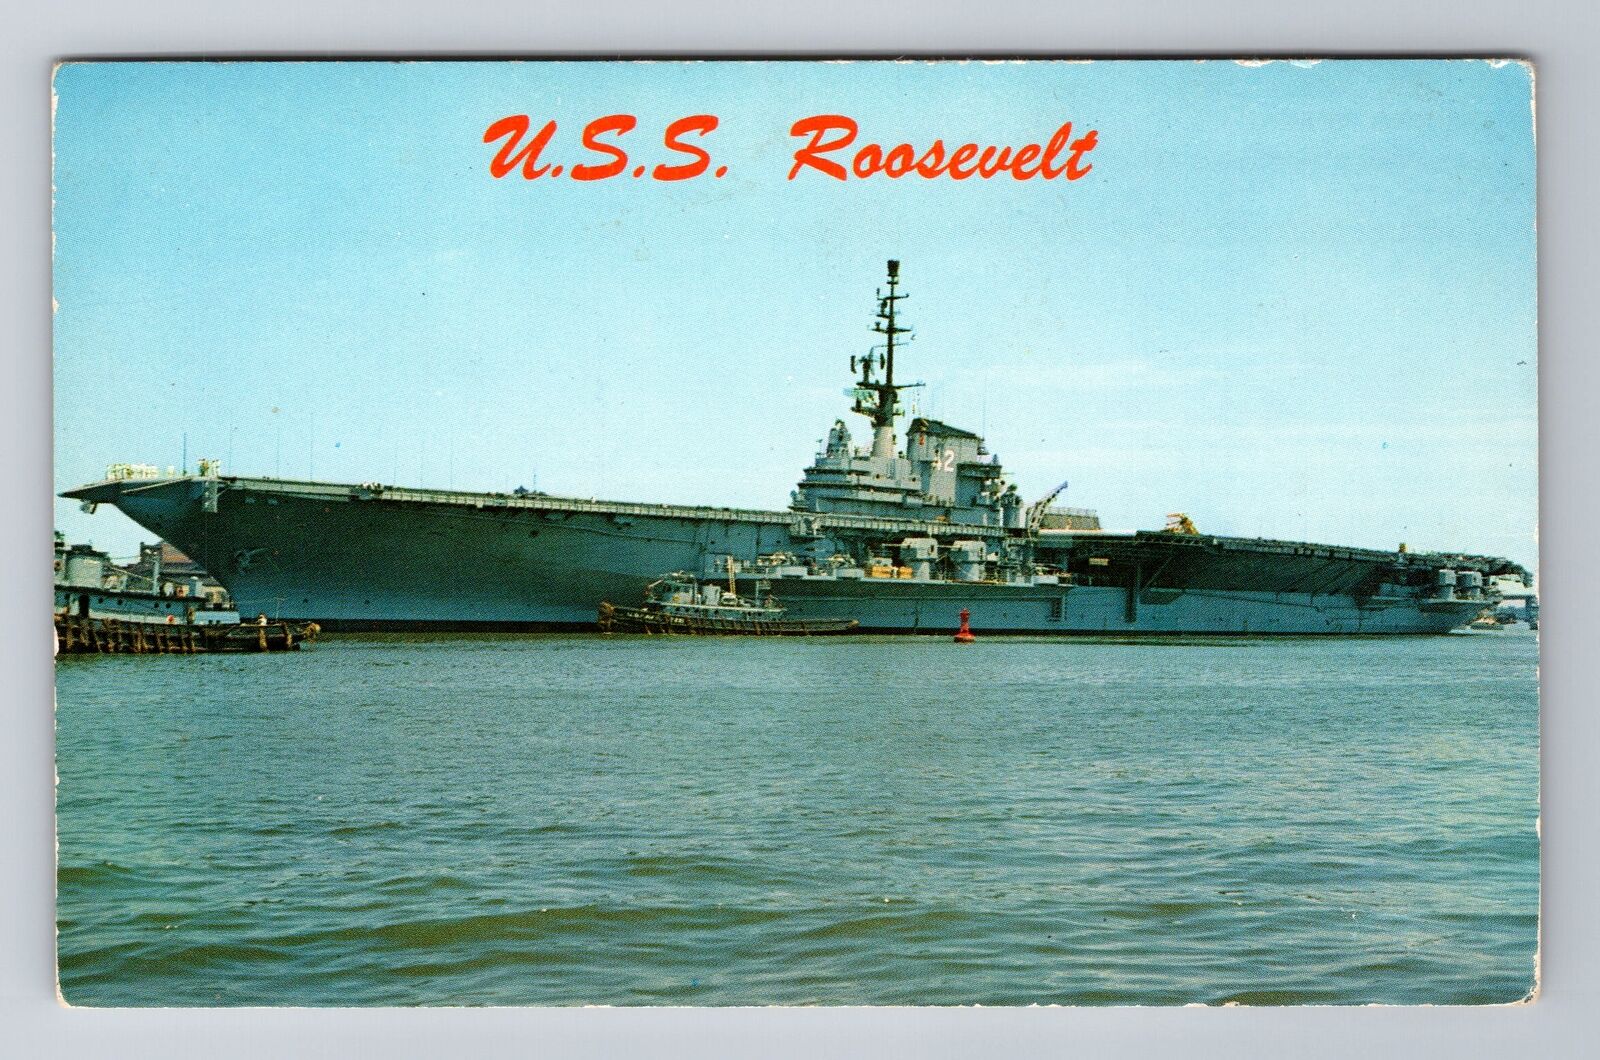 The USS Roosevelt, Ship, Transportation, Antique, Vintage Souvenir Postcard